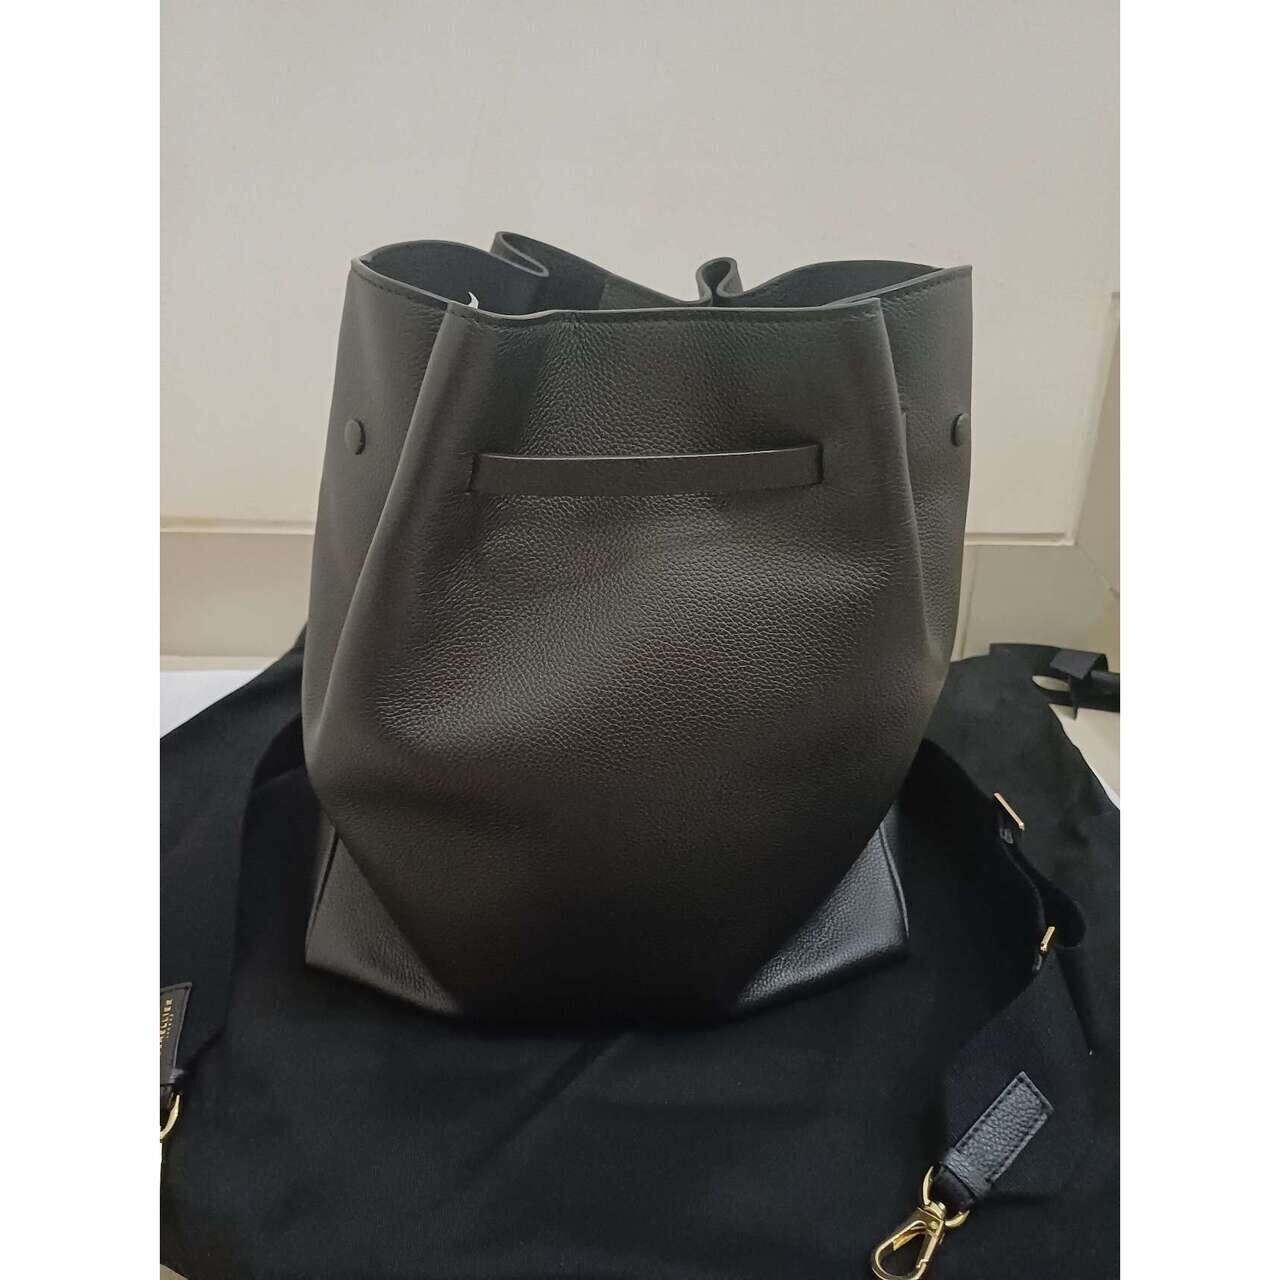 DeMellier Black Sling Bag